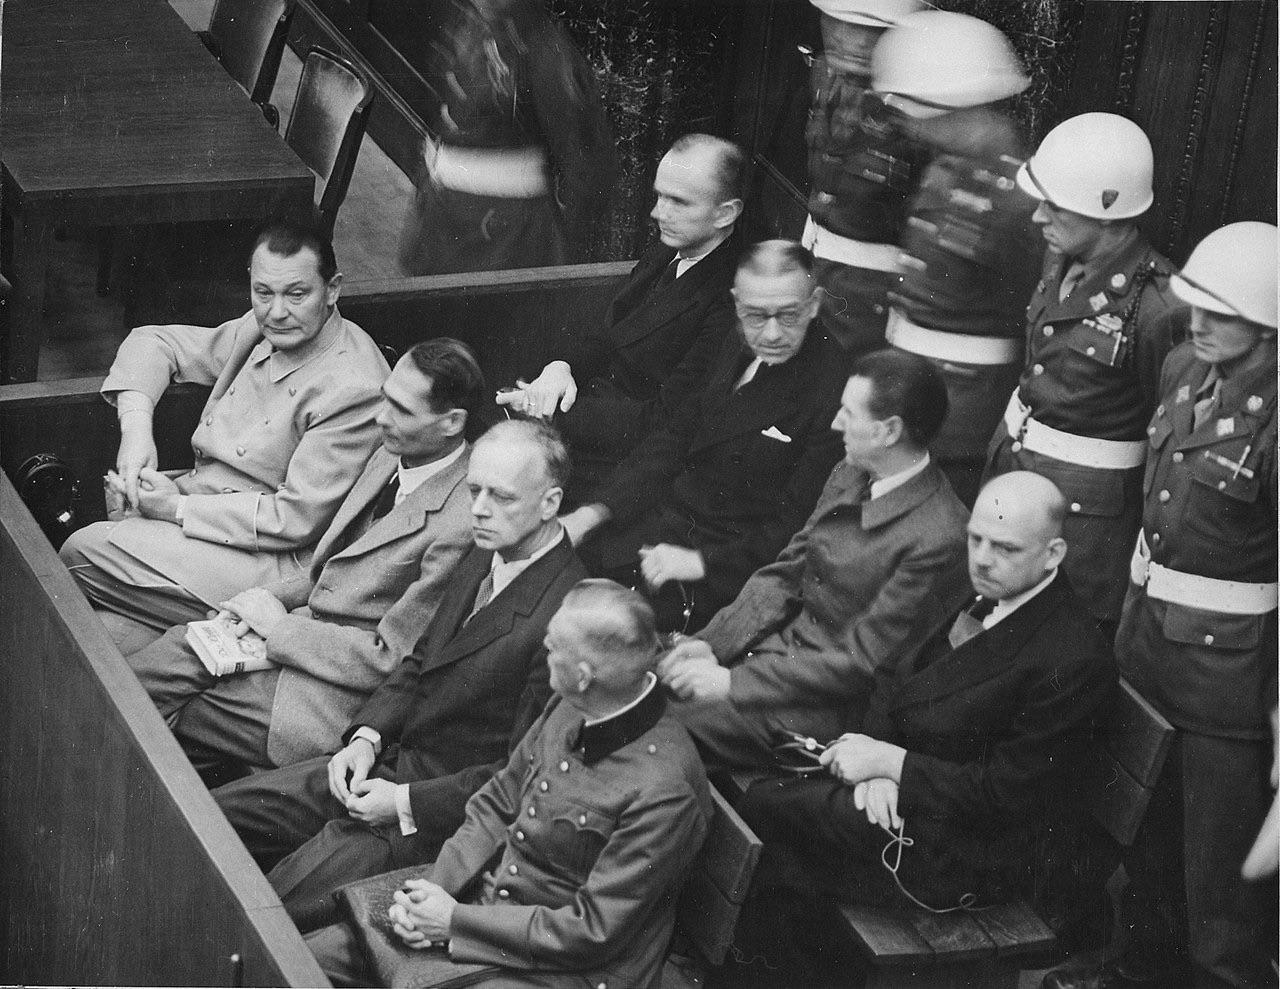 fascinating historical photos -  nuremberg trials - N